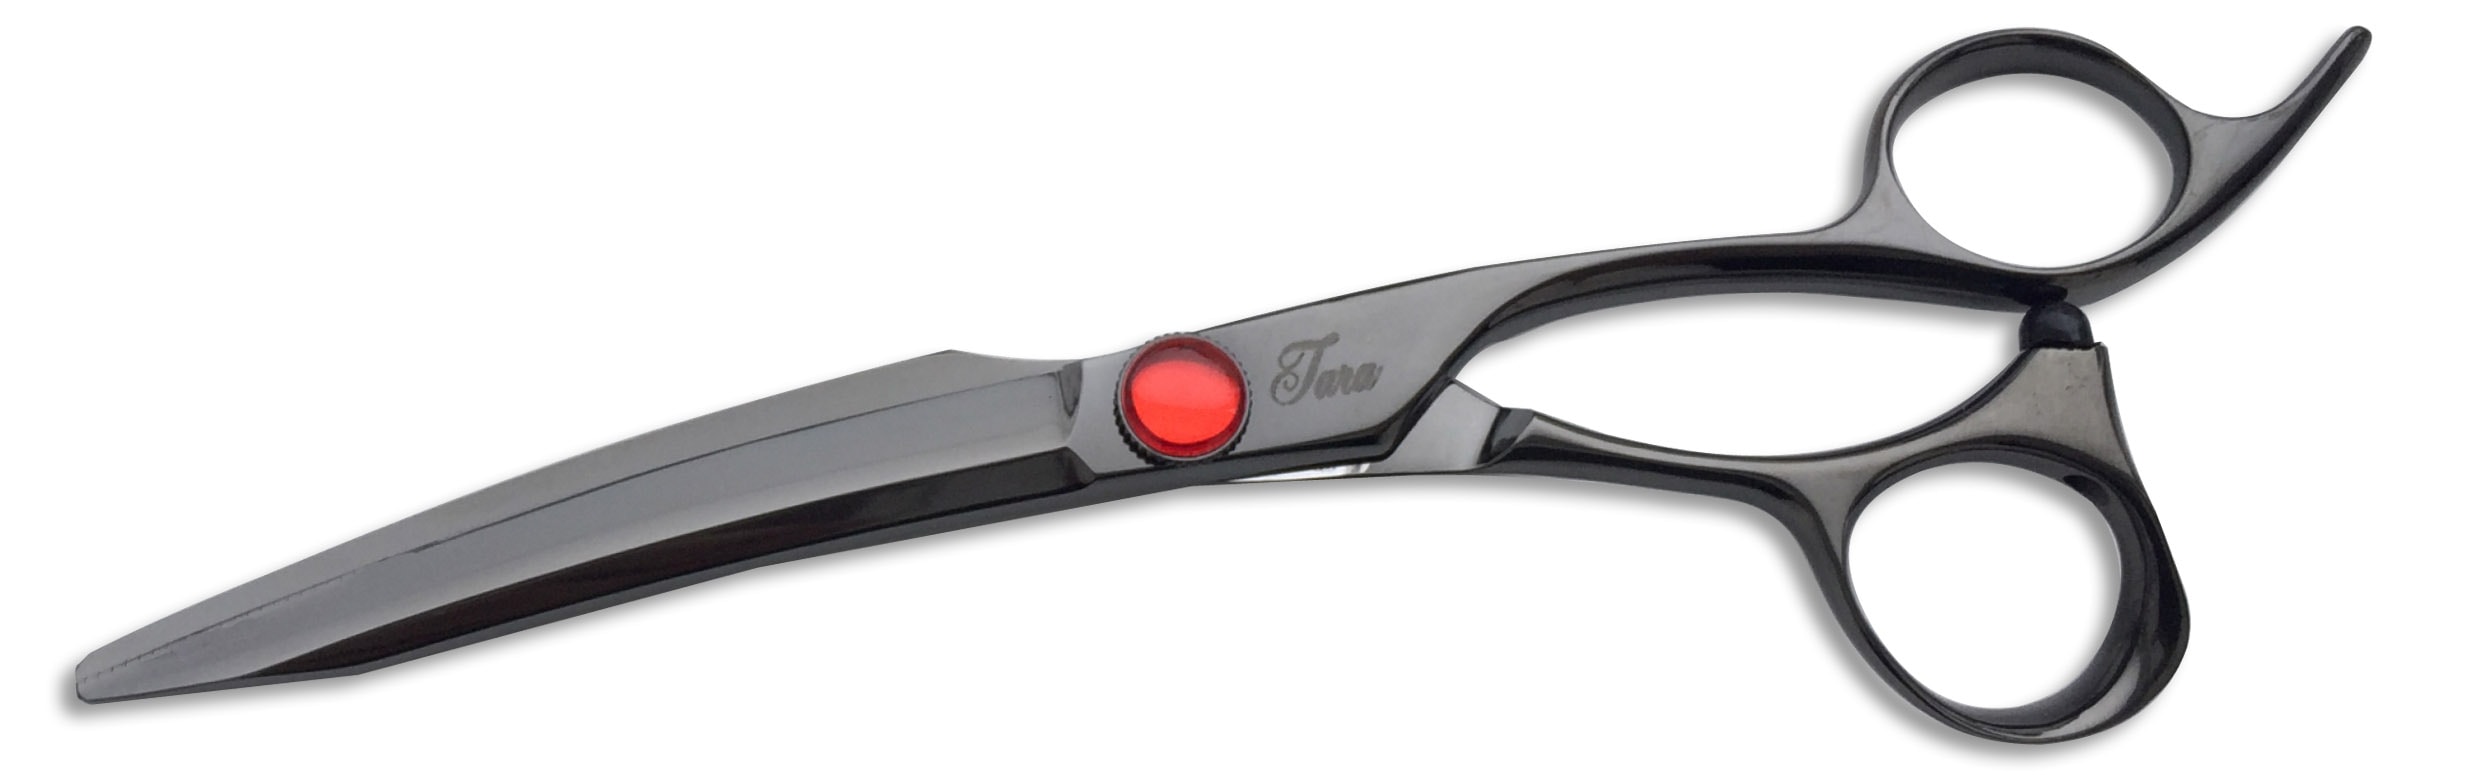 Tara XPB Black Titanium Scissors